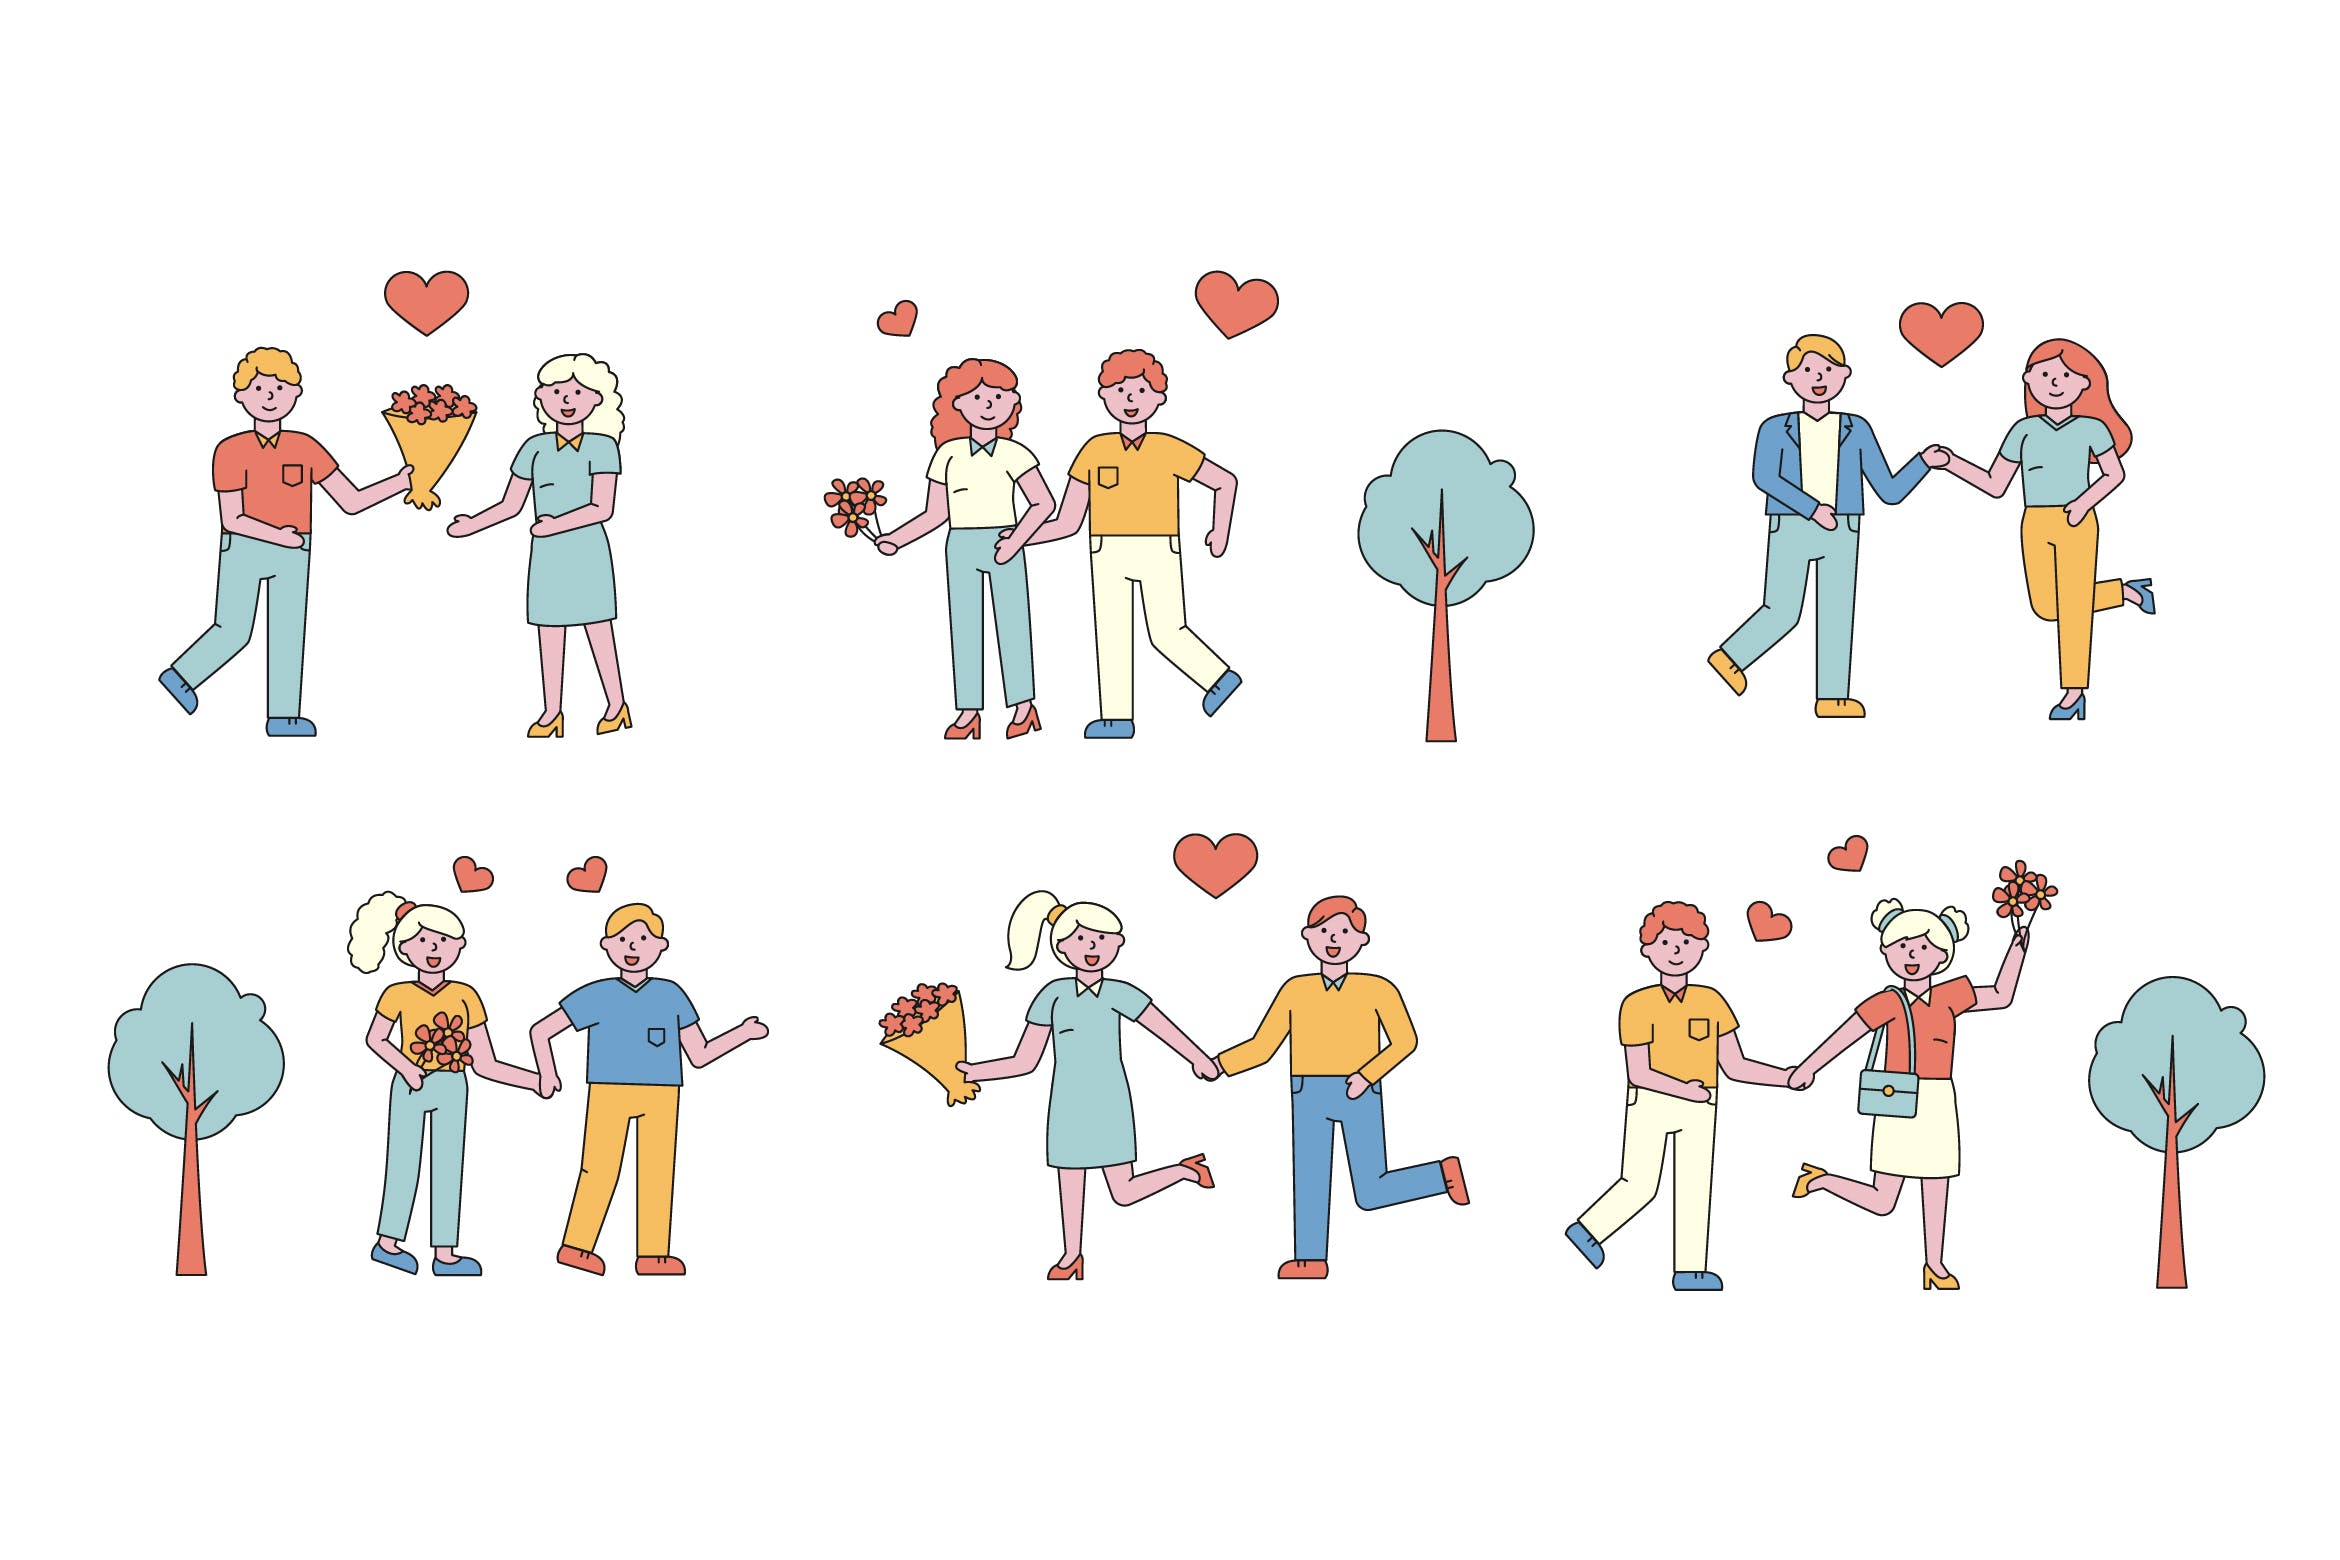 情侣爱情主题人物形象线条艺术矢量插画蚂蚁素材精选素材 Romantic Lineart People Character Collection插图